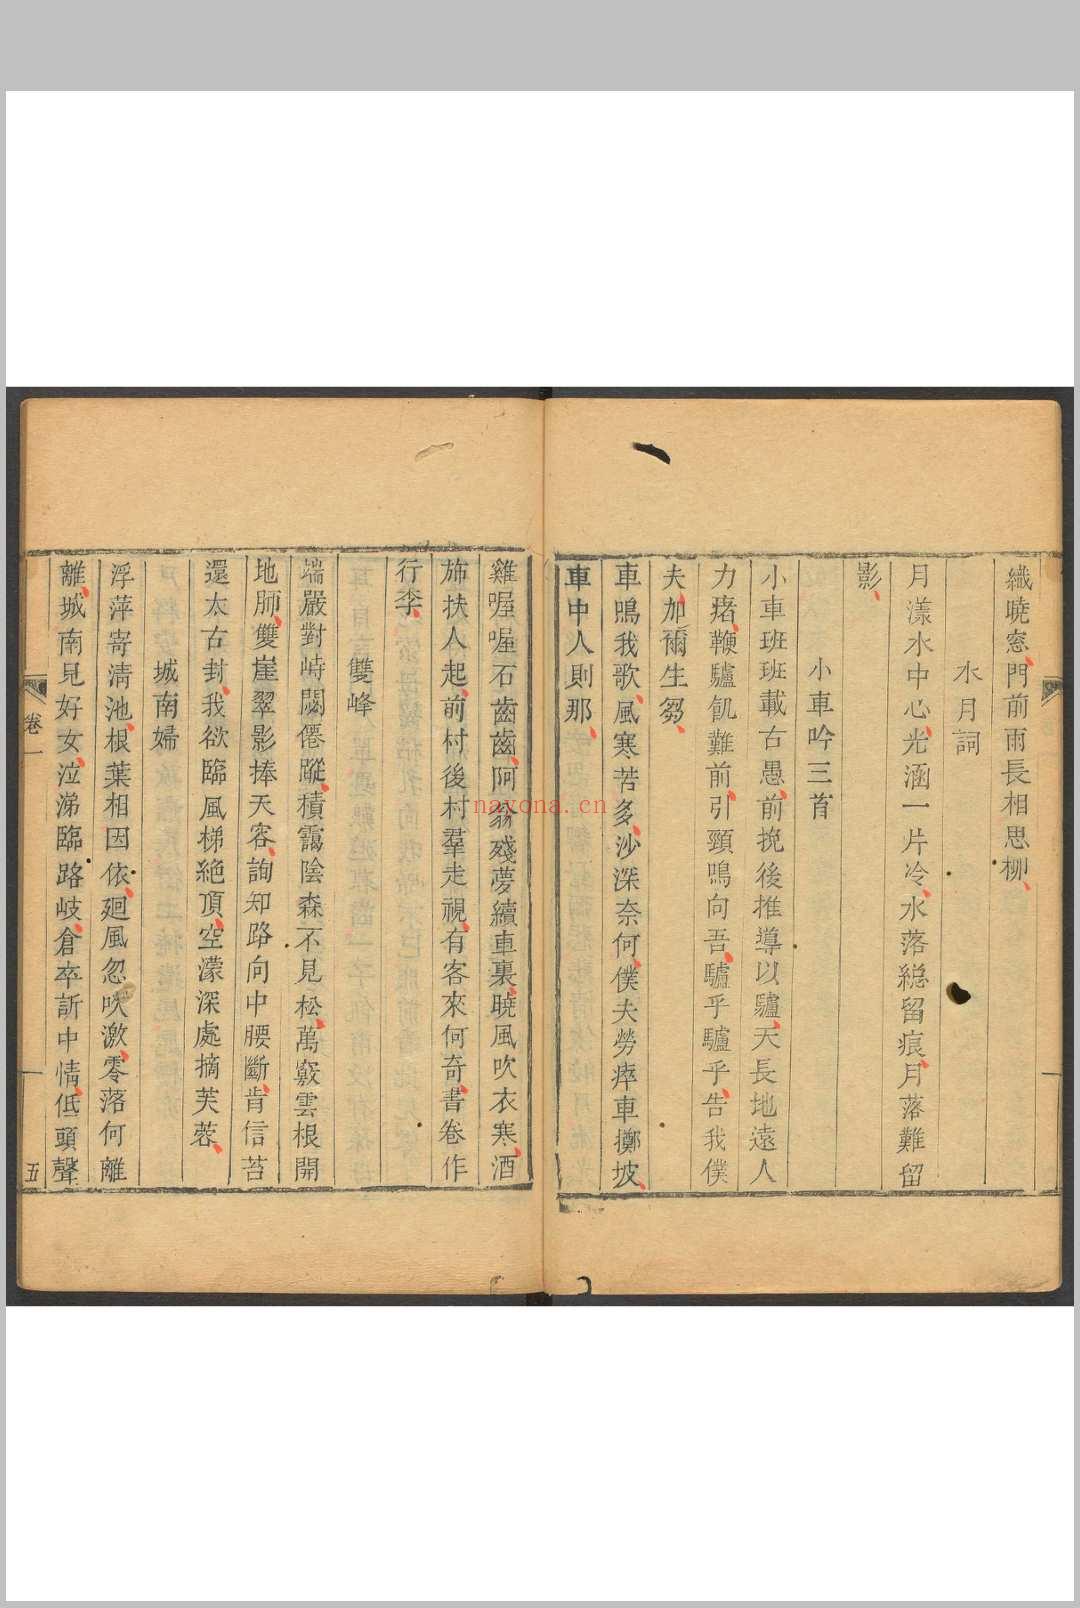 迂松阁诗钞  十二卷 李雝来撰.乐旨堂, [1784]